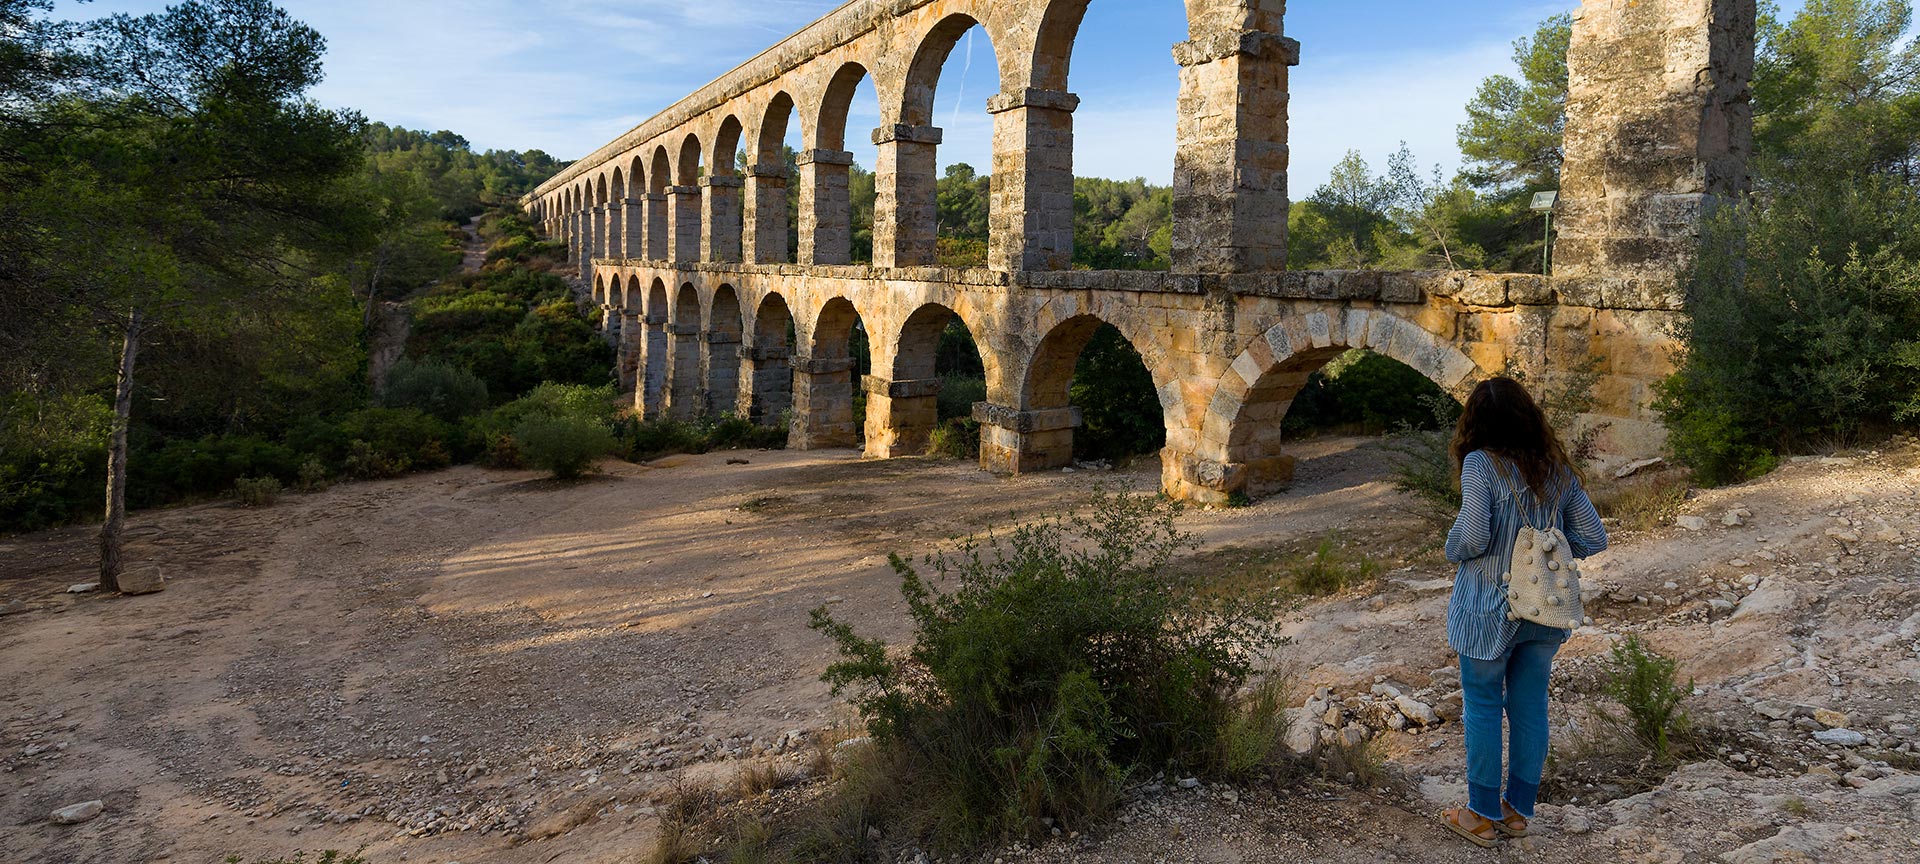 Ferreres Aqueduct or Devil